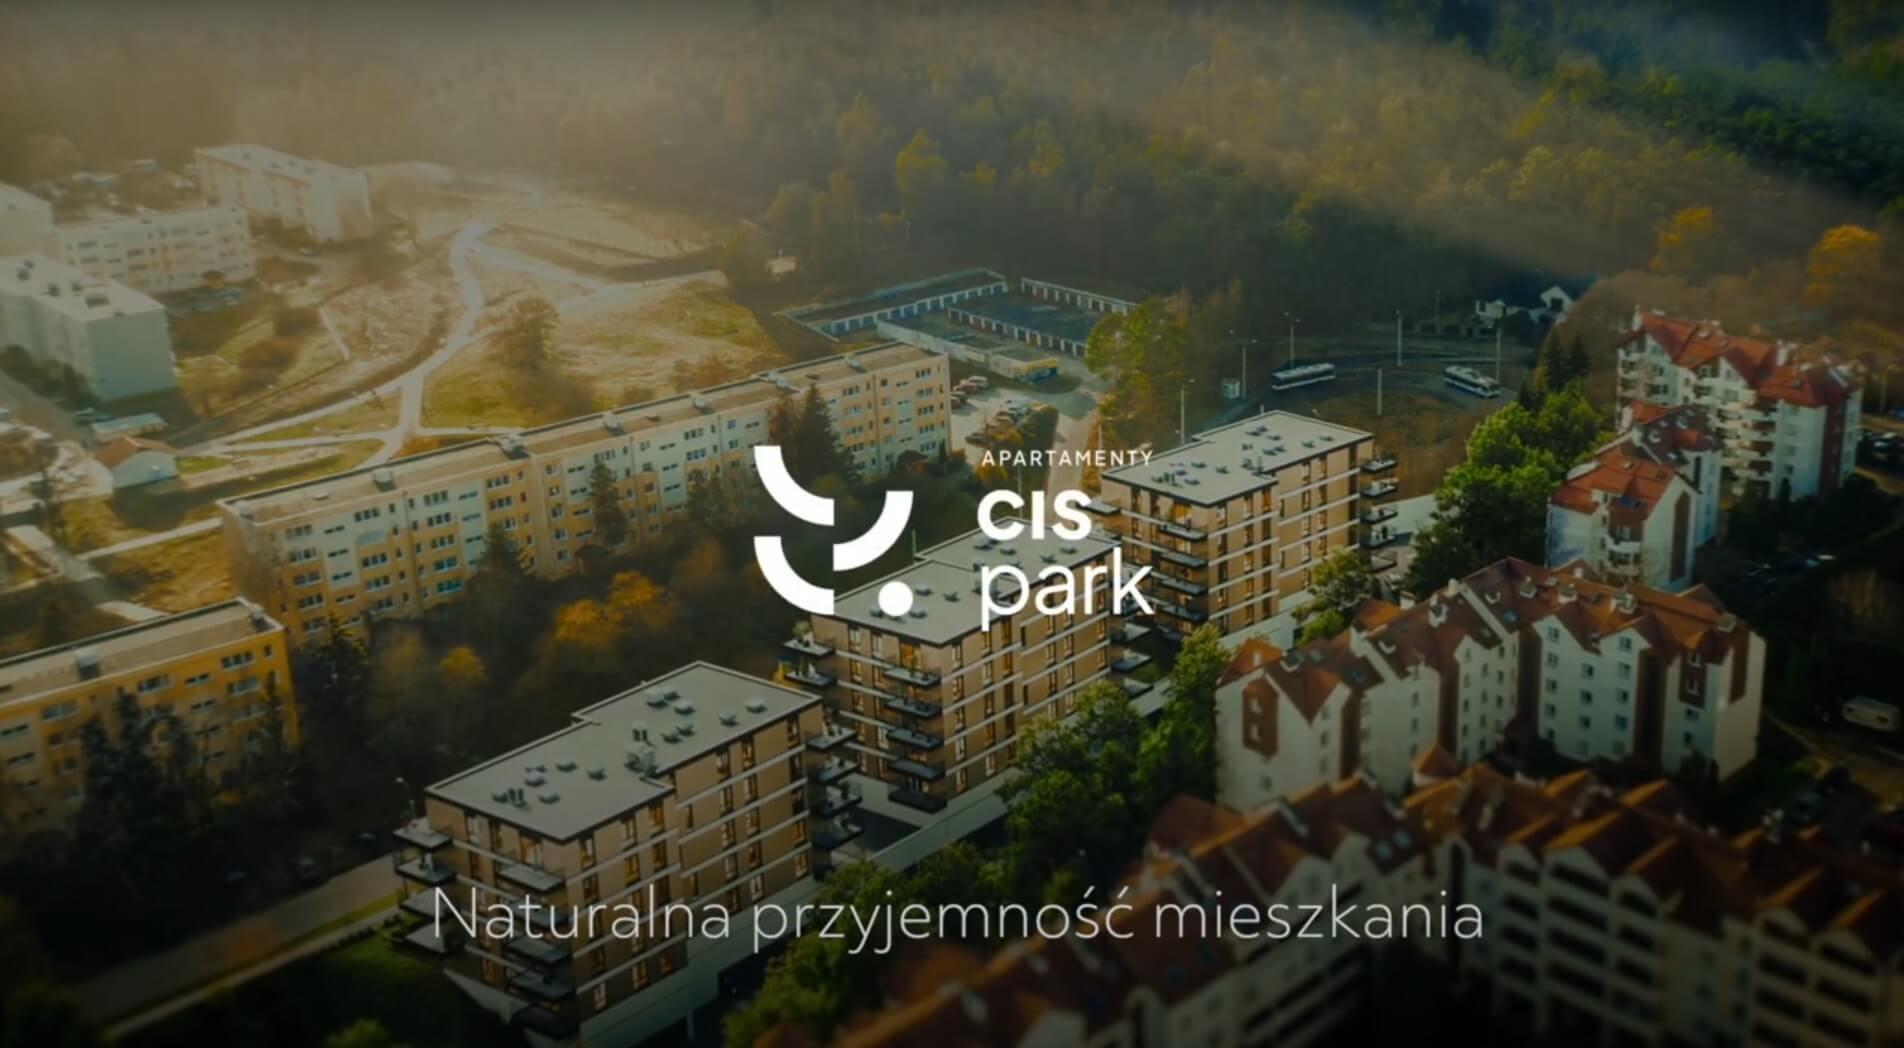 Widok z lotu ptaka na dzielnicę mieszkaniową z nowoczesnymi apartamentowcami otoczonymi bujną zielenią, z logo „CIS Park” i podpisem „Naturalna przyjemność mieszkań”.